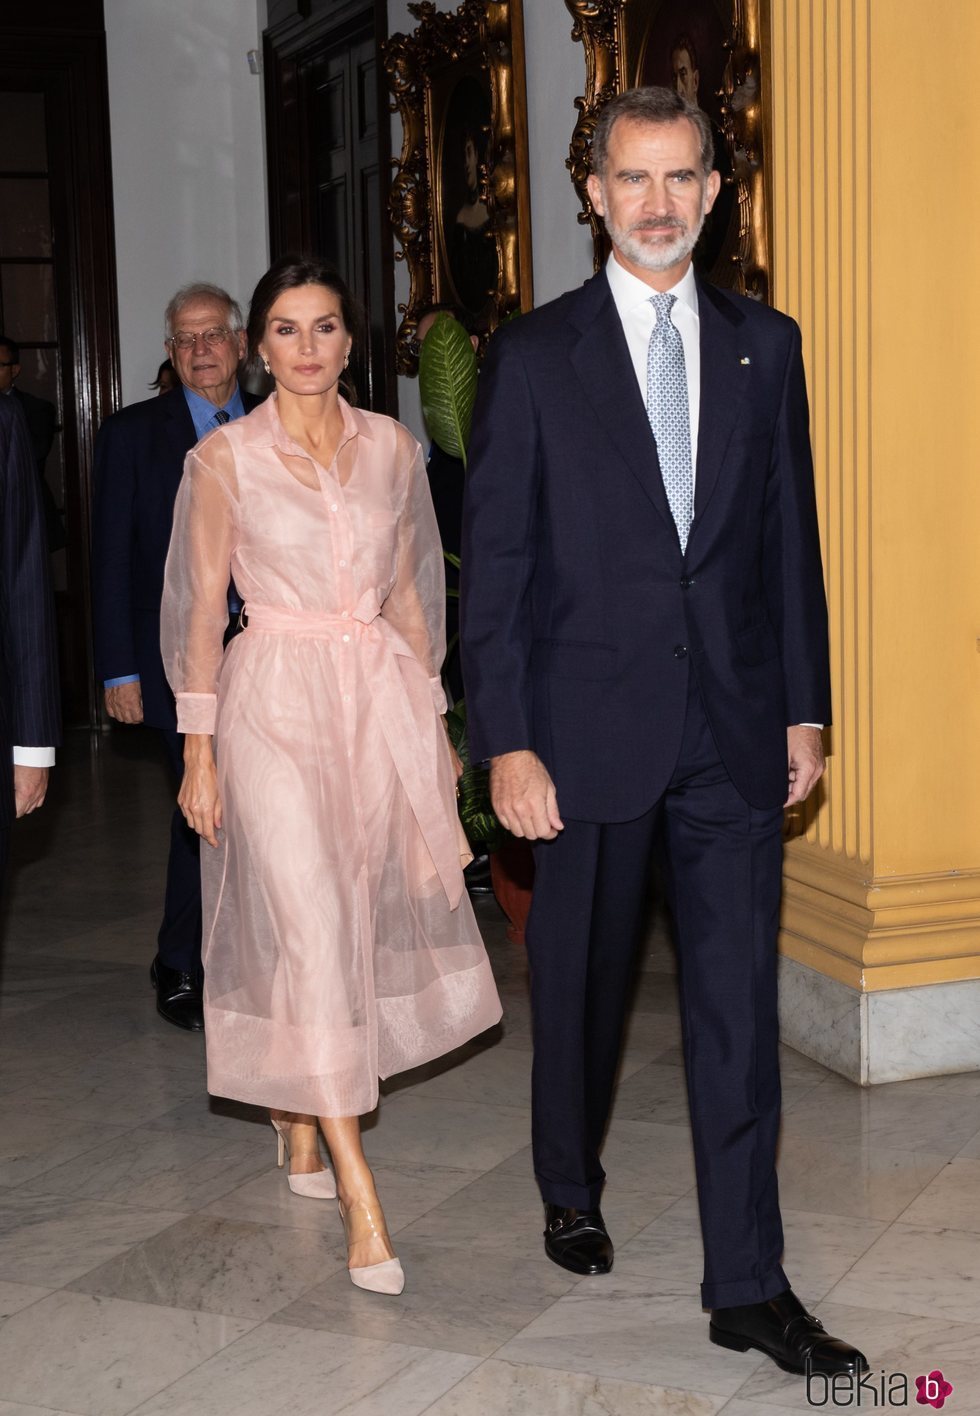 Los Reyes Felipe y Letizia en la cena en honor al Presidente de Cuba en su Visita de Estado a Cuba